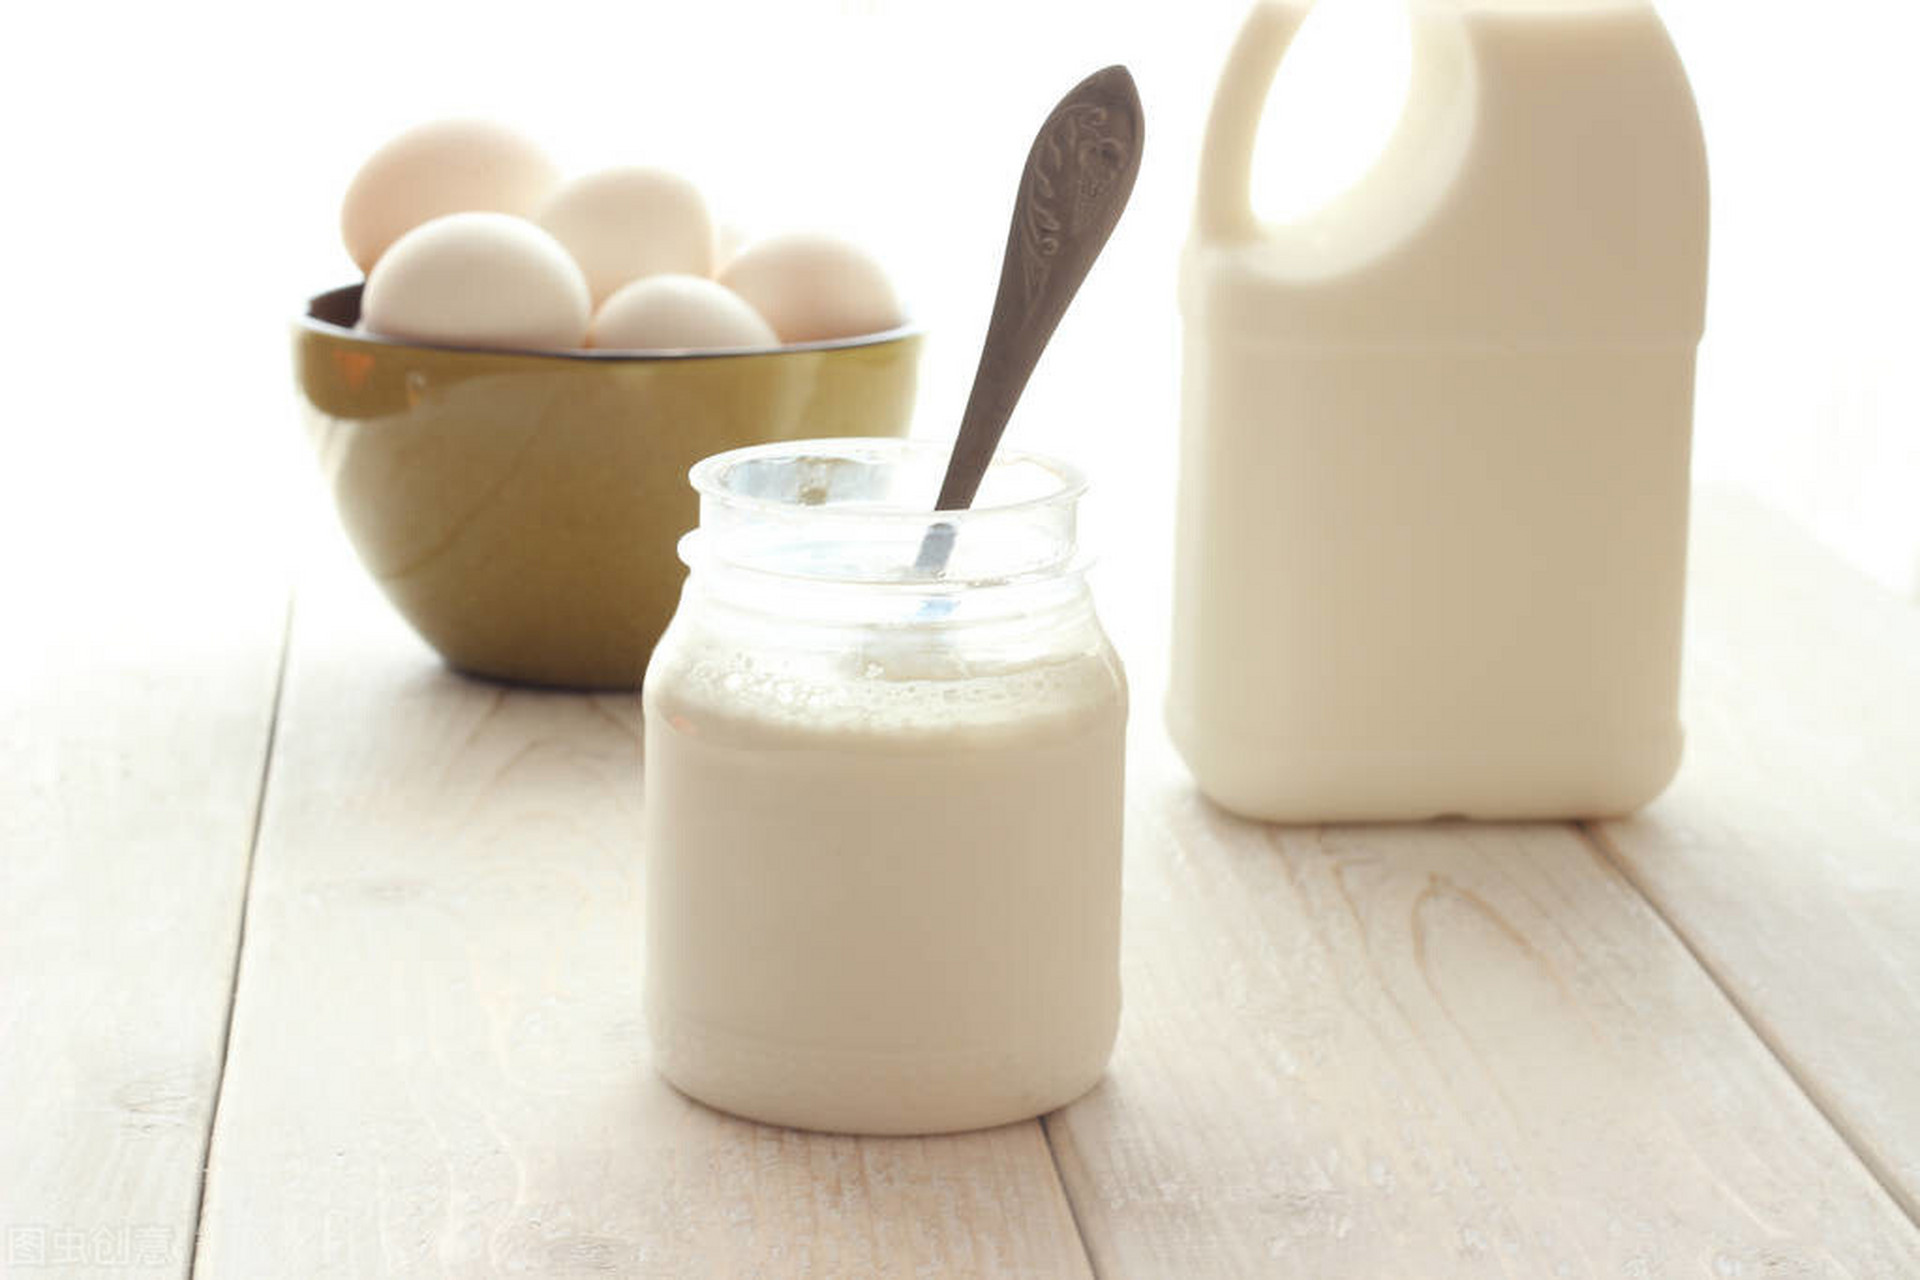 夜间人体不能从食物中补充钙,所以血钙浓度会下降,喝酸奶可减少身体